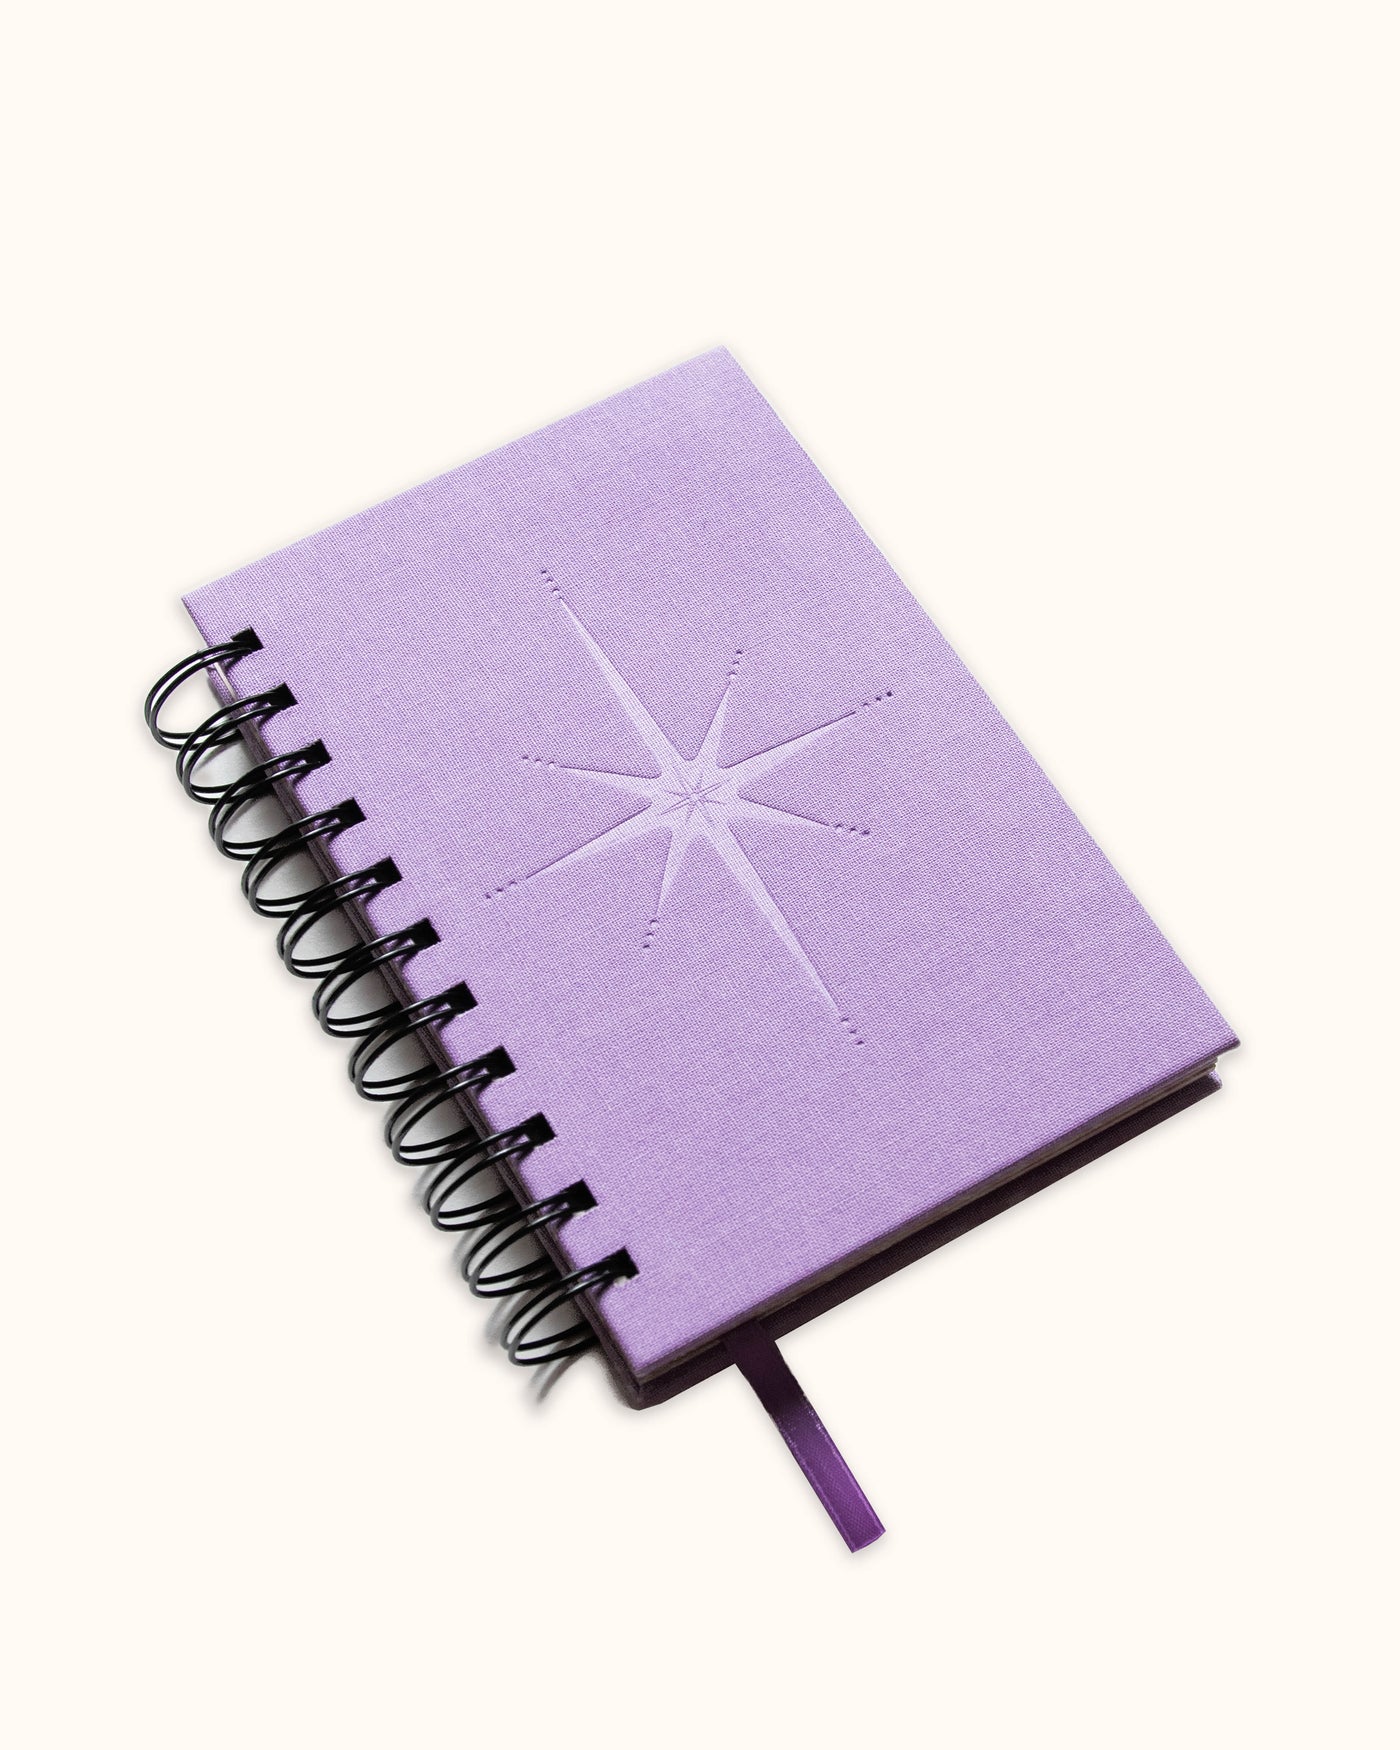 The Star Spiral Bound Notebook